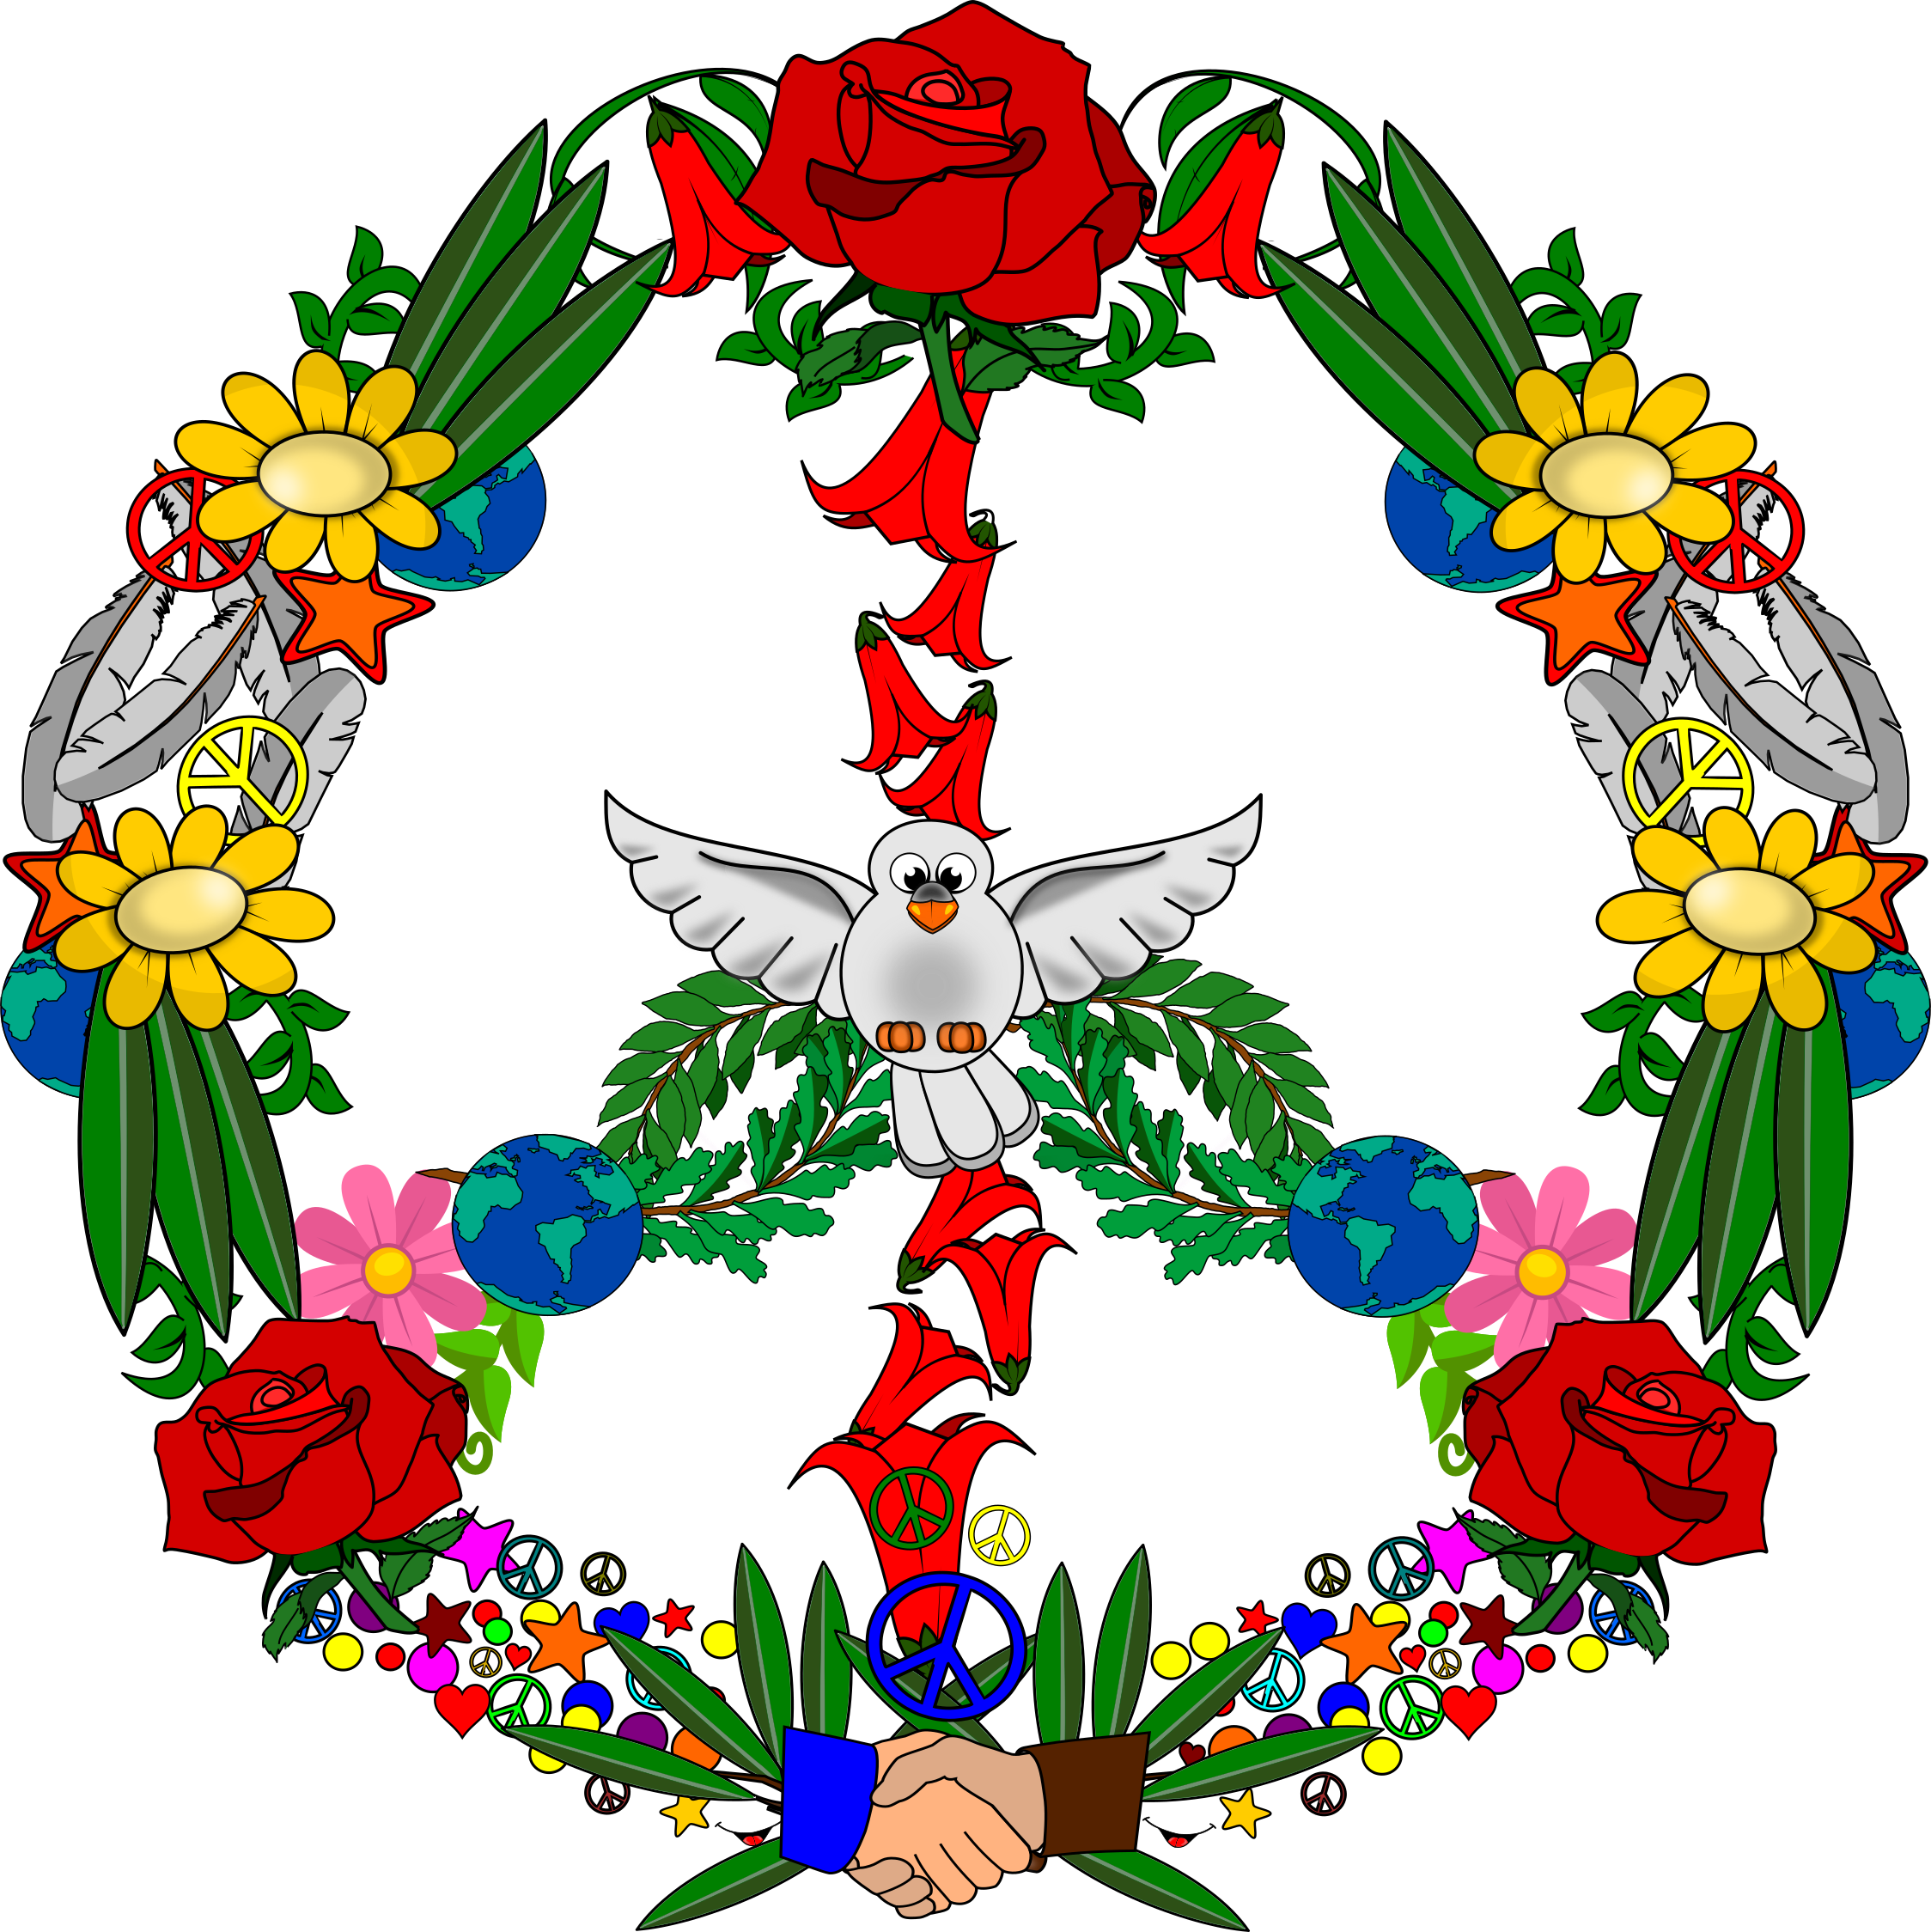 Mural símbolo de la Paz formado con símbolos de paz - Actiludis